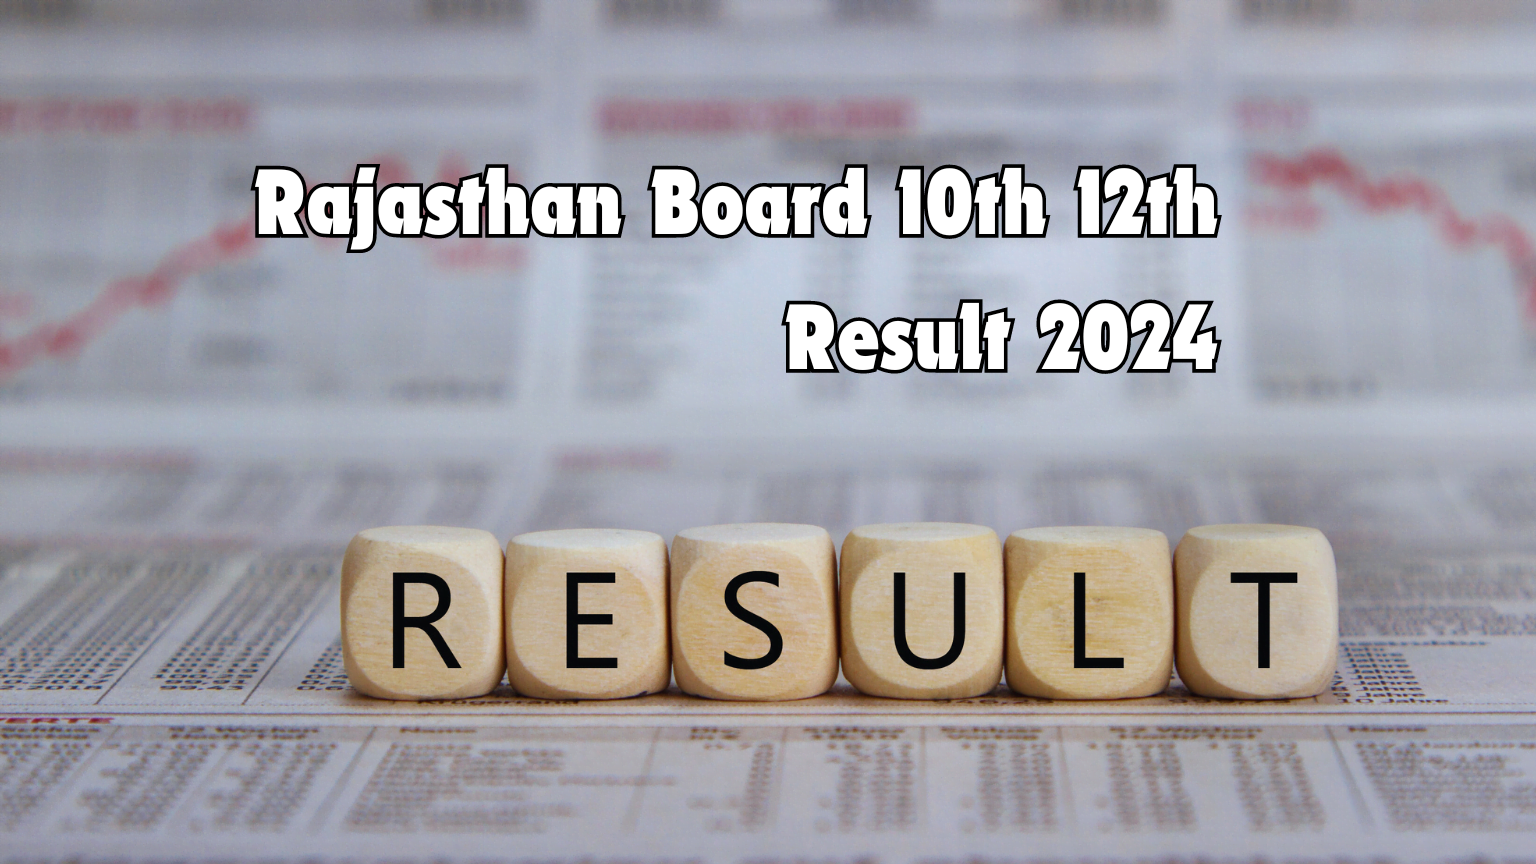 Rajasthan Board 10th 12th Result 2024: बड़ी खबर, आरबीएसइ रिजल्ट इस समय आएगा। पढ़े पूरी खबर